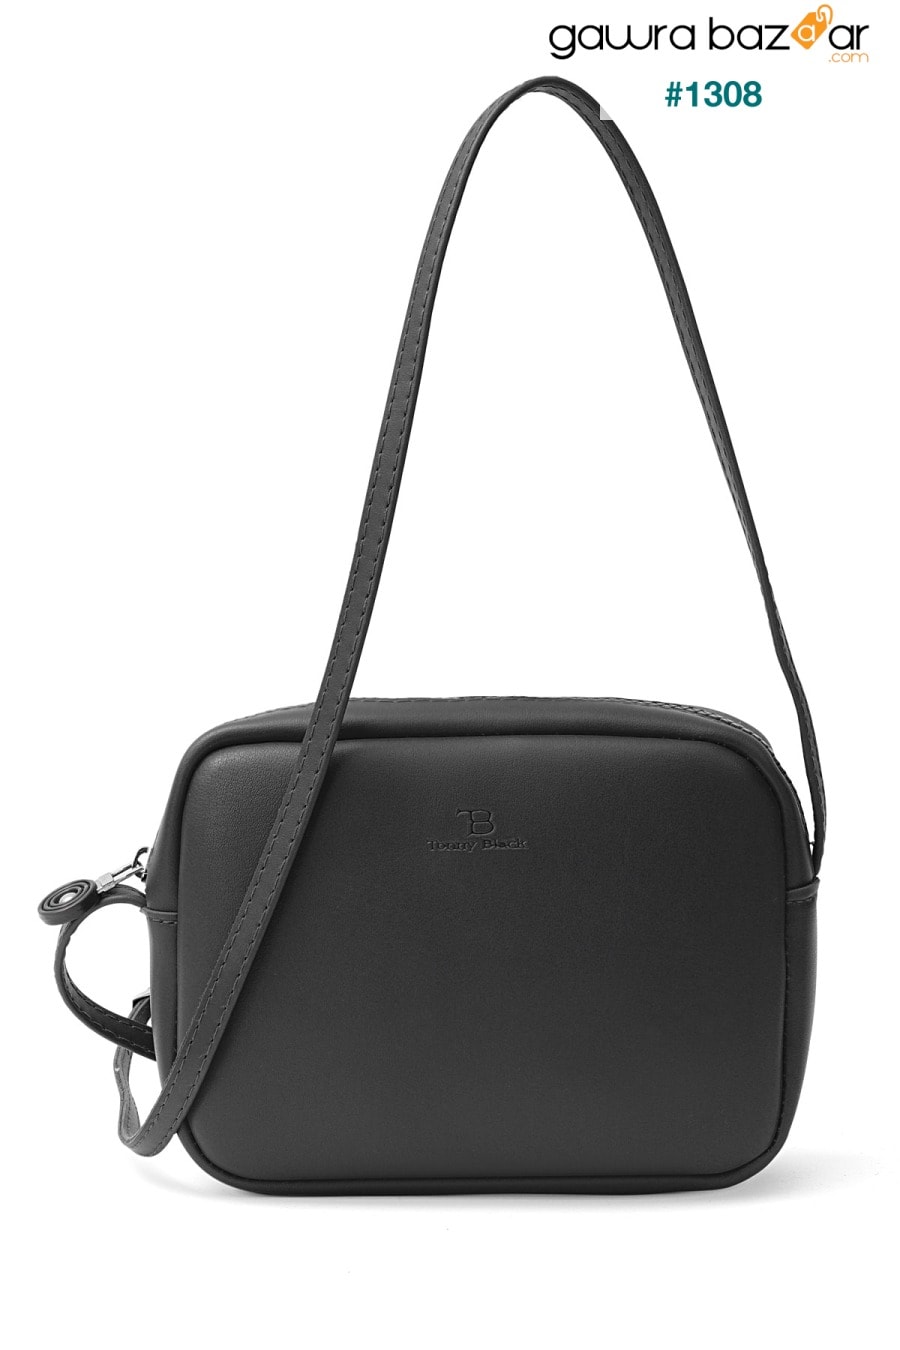 حقيبة كروس أوربان صغيرة سوداء أصلية للسيدات وحقيبة كتف بحزام قابل للتعديل Tonny Black 0